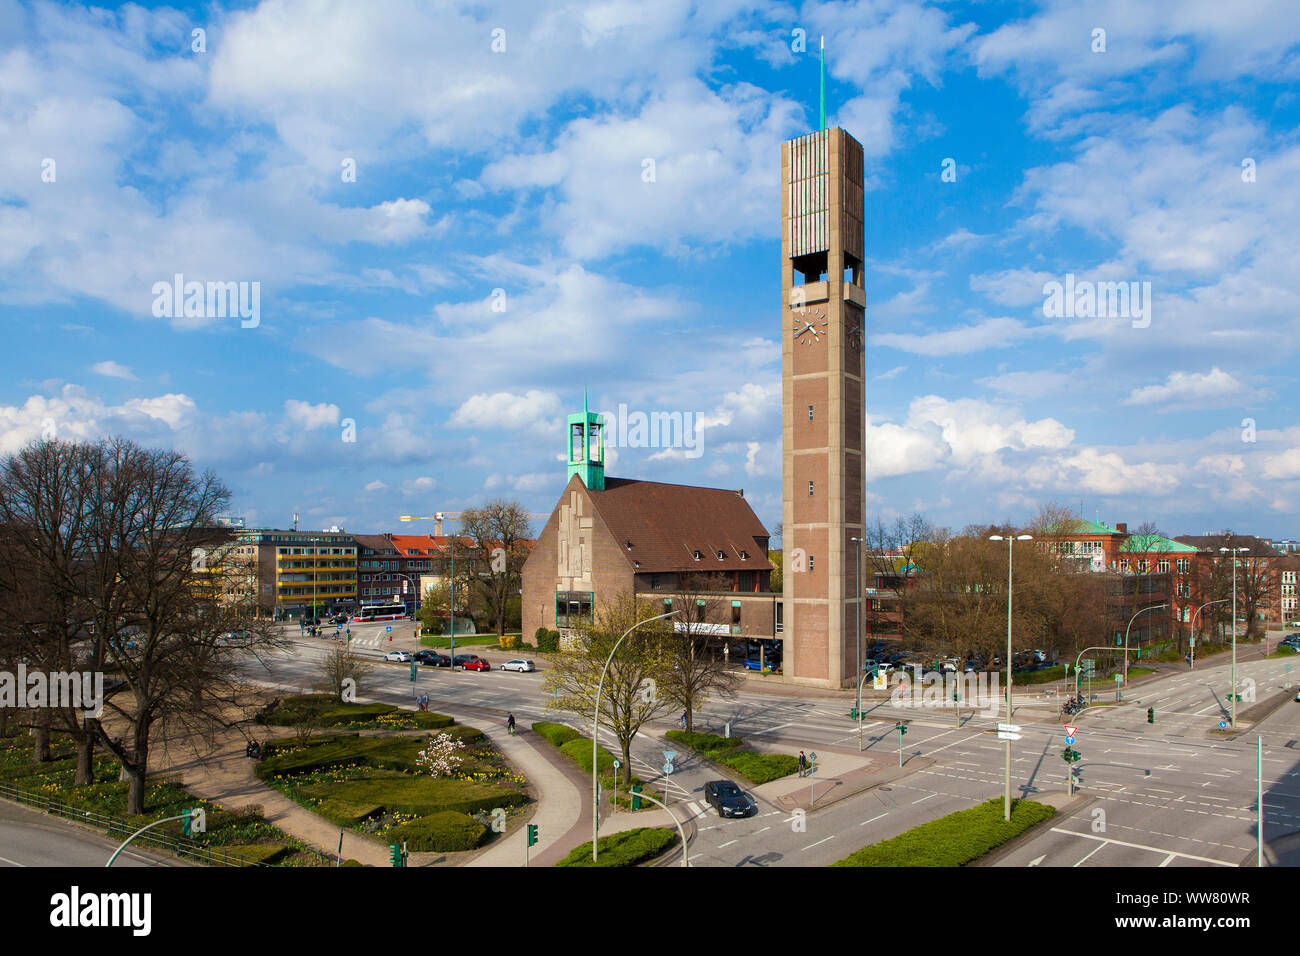 Die Puvogelpark und des Christus Kirche am Wandsbek Markt in Hamburg, Deutschland, Europa Stockfoto